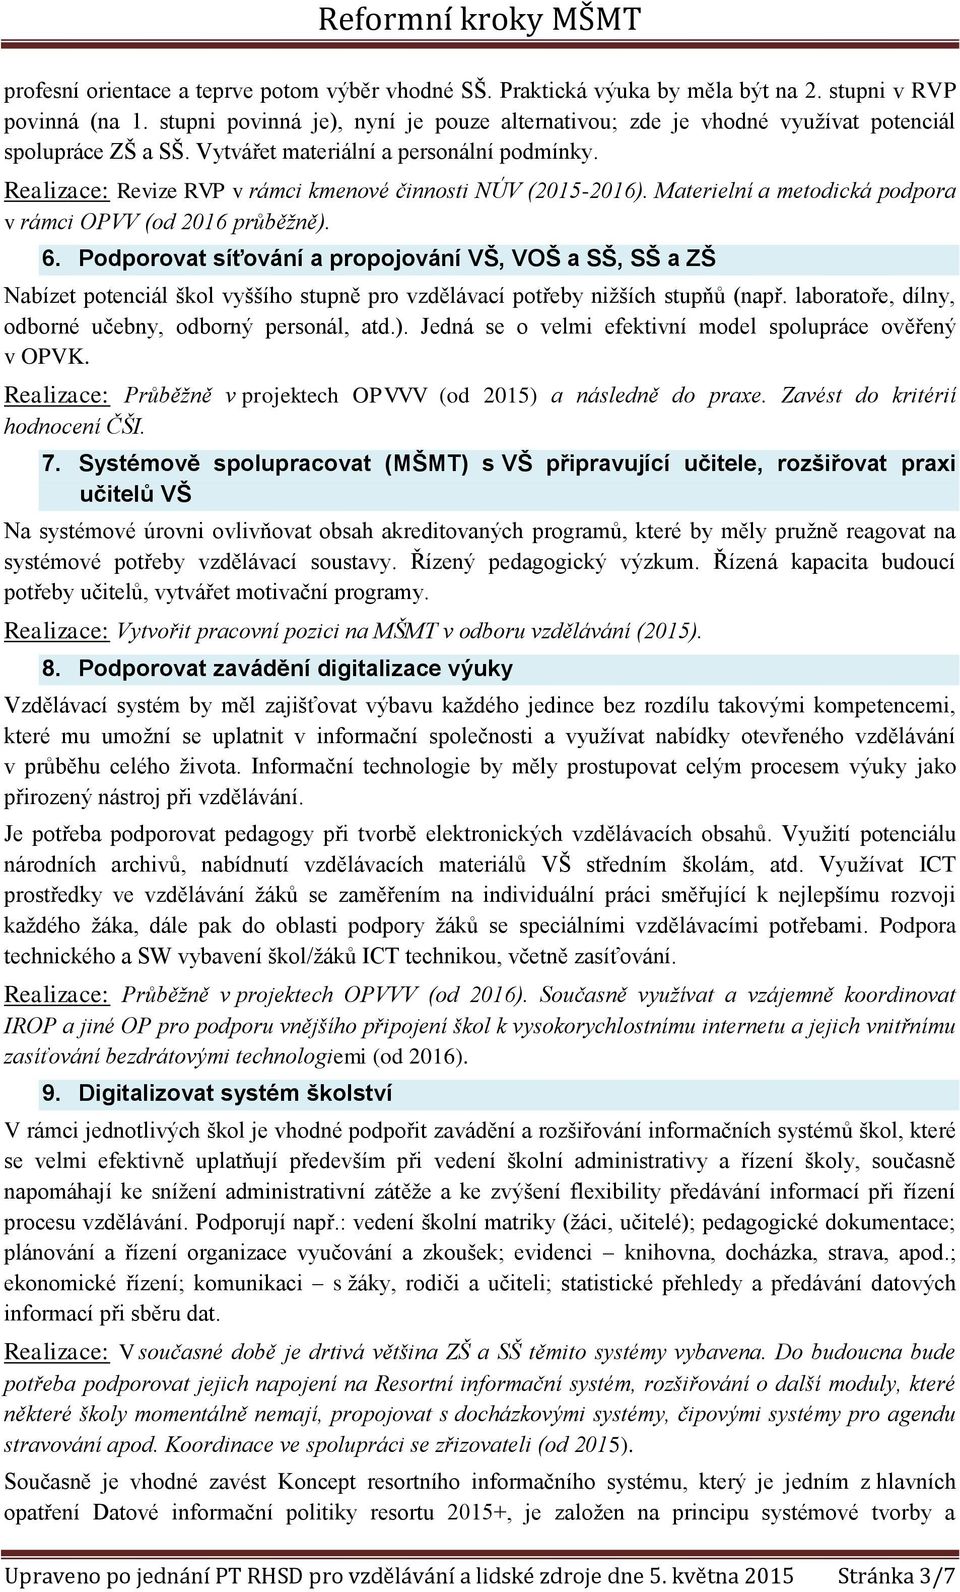 Realizace: Revize RVP v rámci kmenové činnosti NÚV (2015-2016). Materielní a metodická podpora v rámci OPVV (od 2016 průběžně). 6.